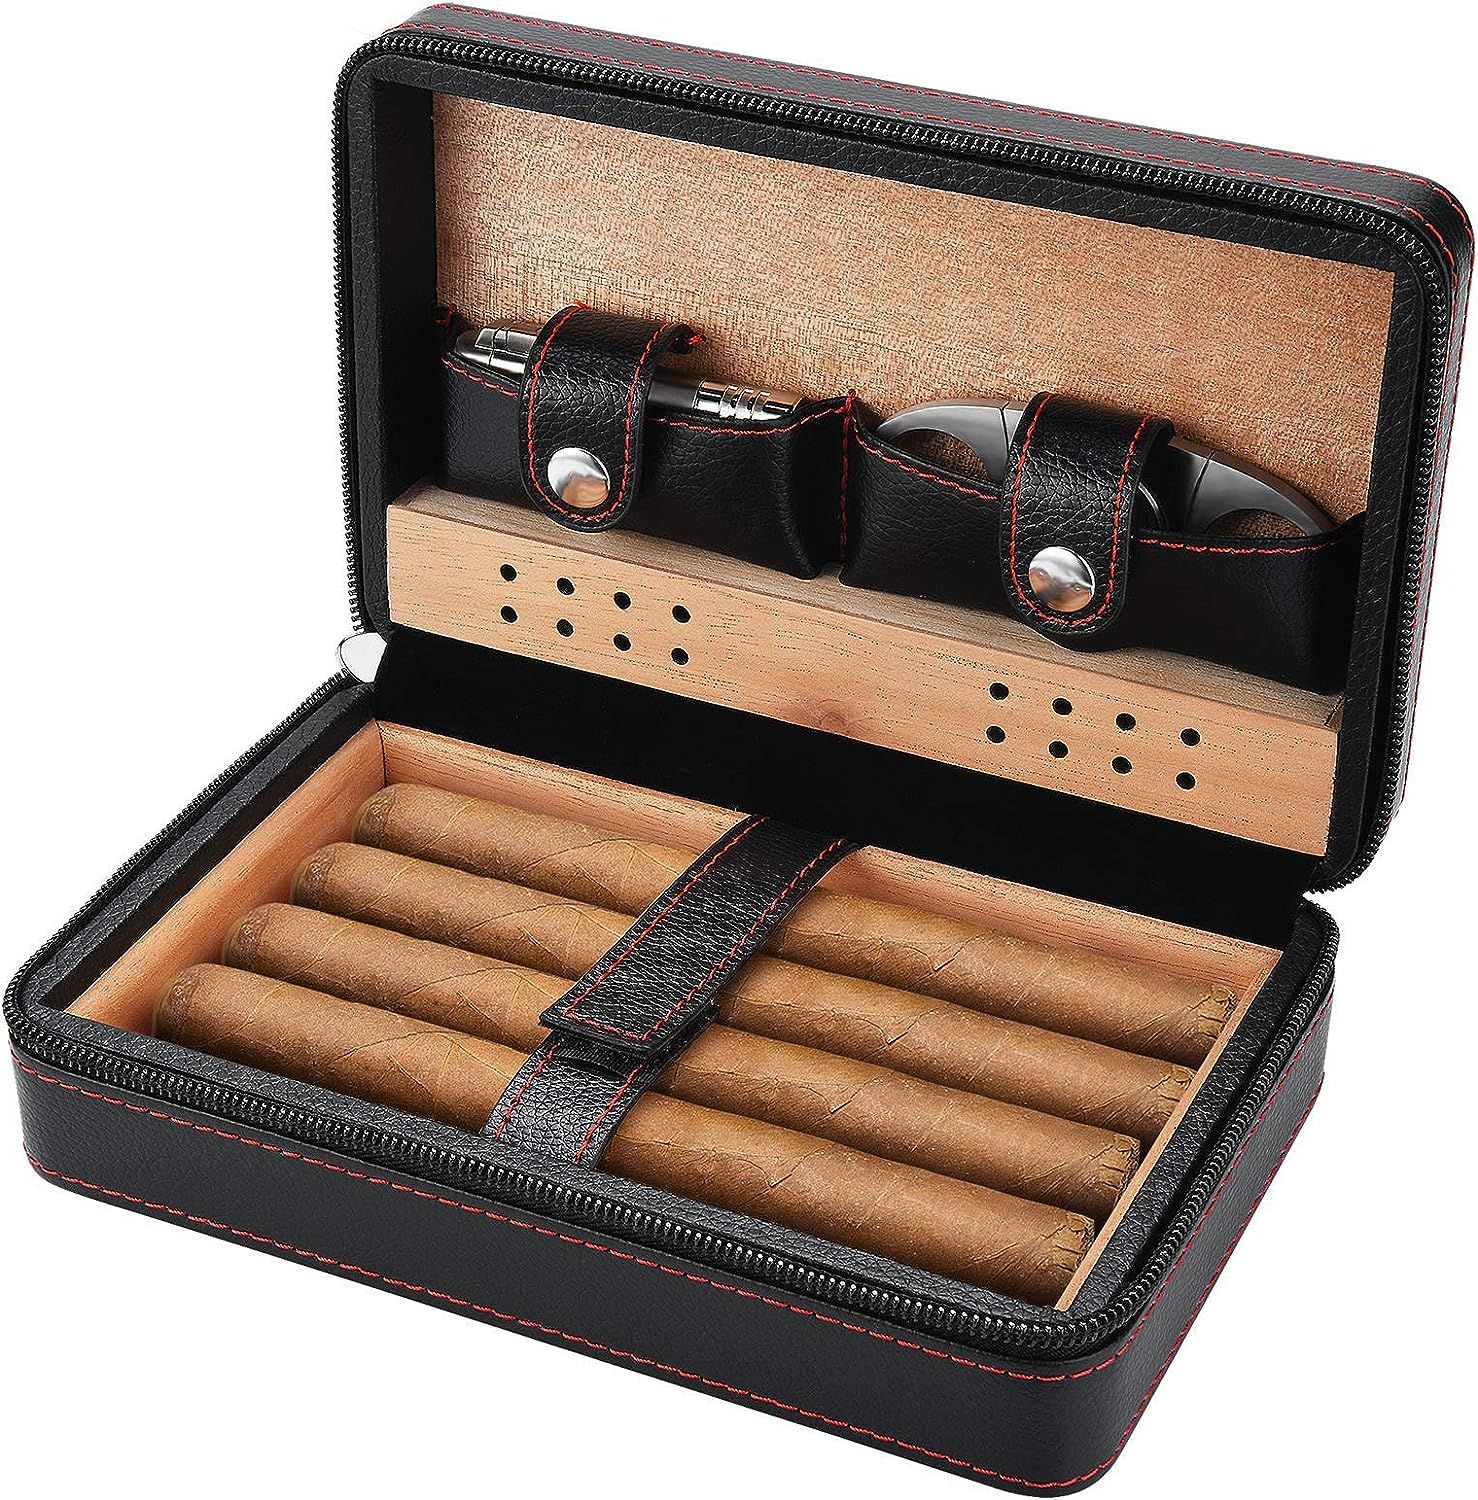 Cigar Humidor Accessories - SEEJI Cigar Case Travel - Portable Leather Humidor Humidifier Cigar C... | Amazon (US)